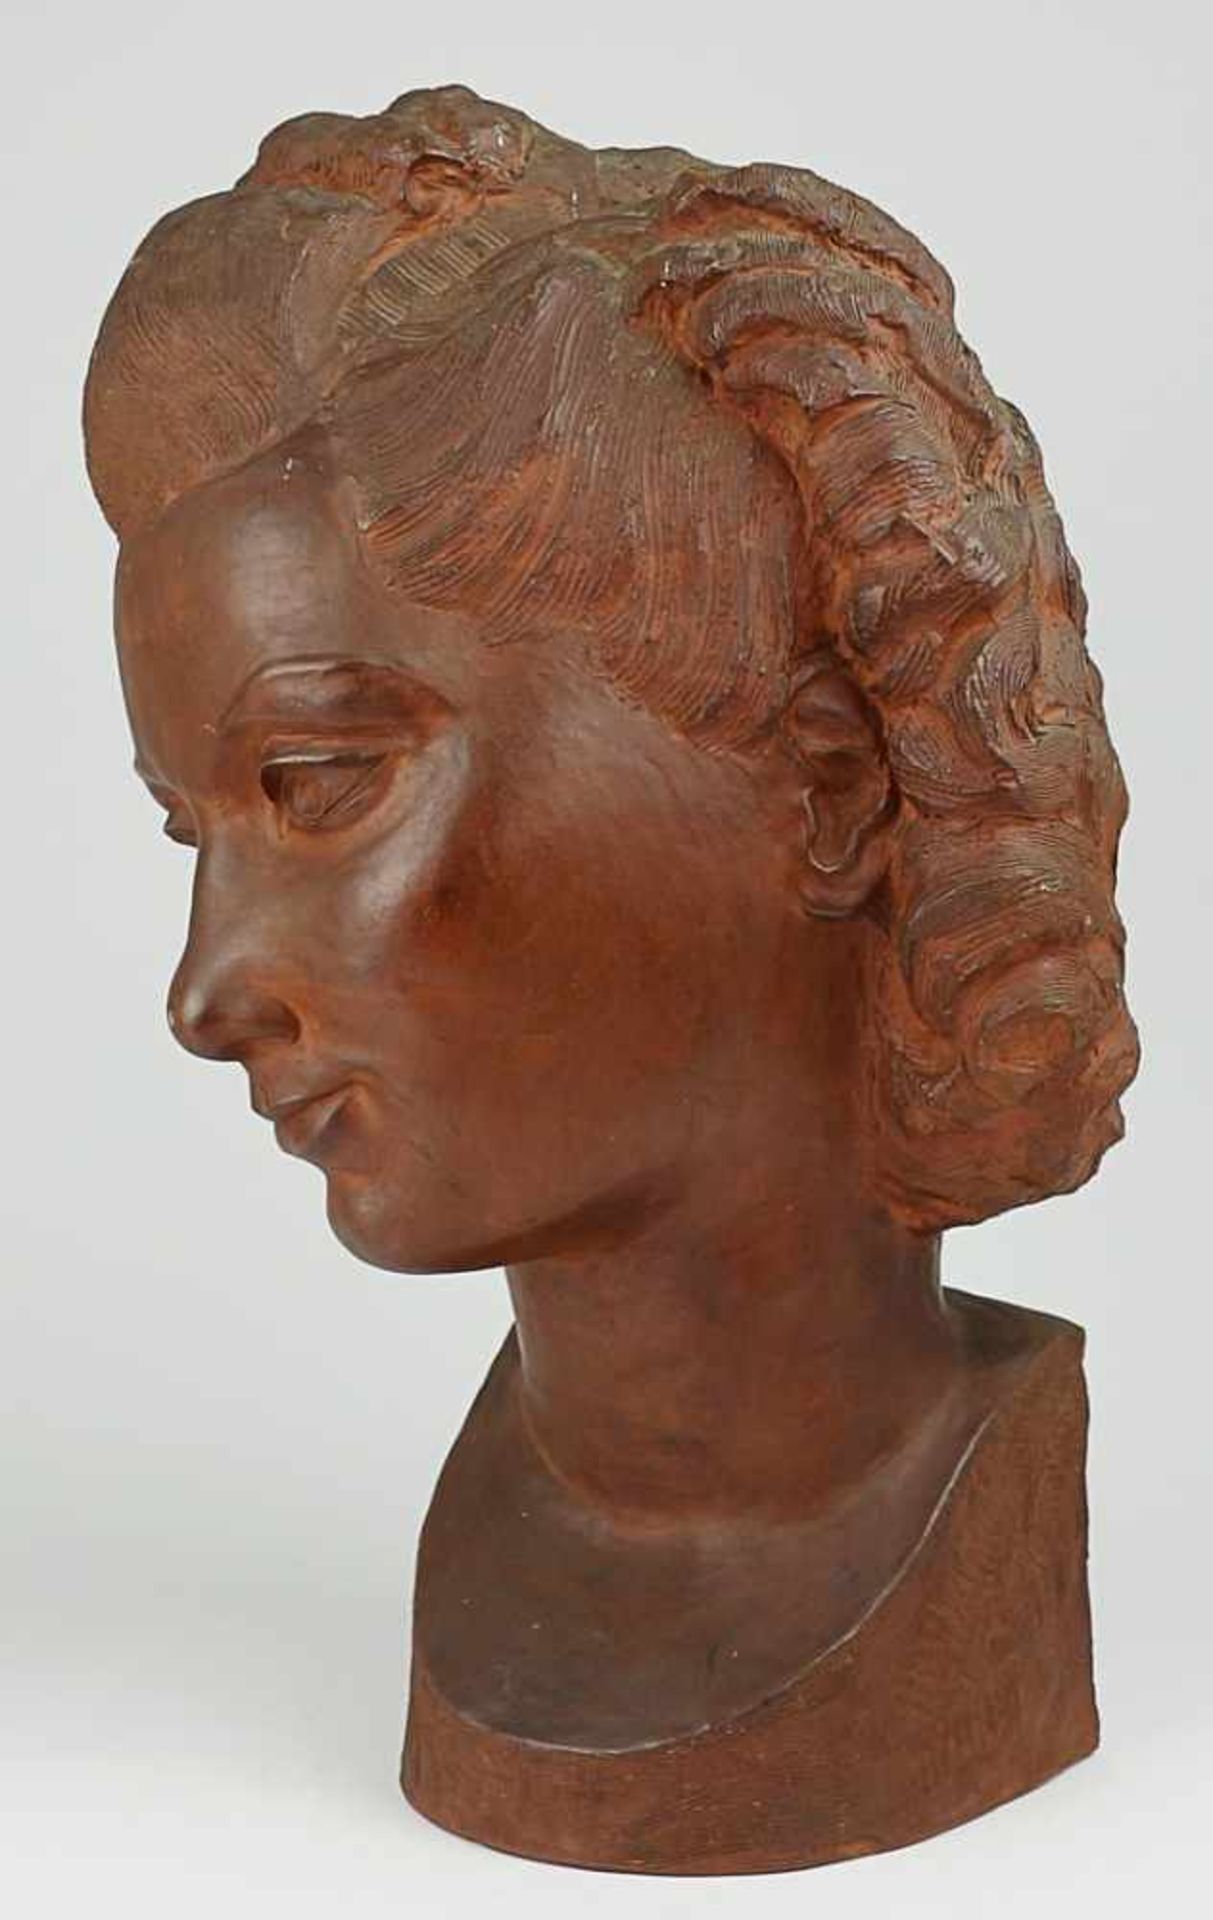 Gerz-Schenk, Herta - Skulptur 1940erJahre, rs. sign.,1943, roter Scherben, Frauenkopf mit - Bild 5 aus 6